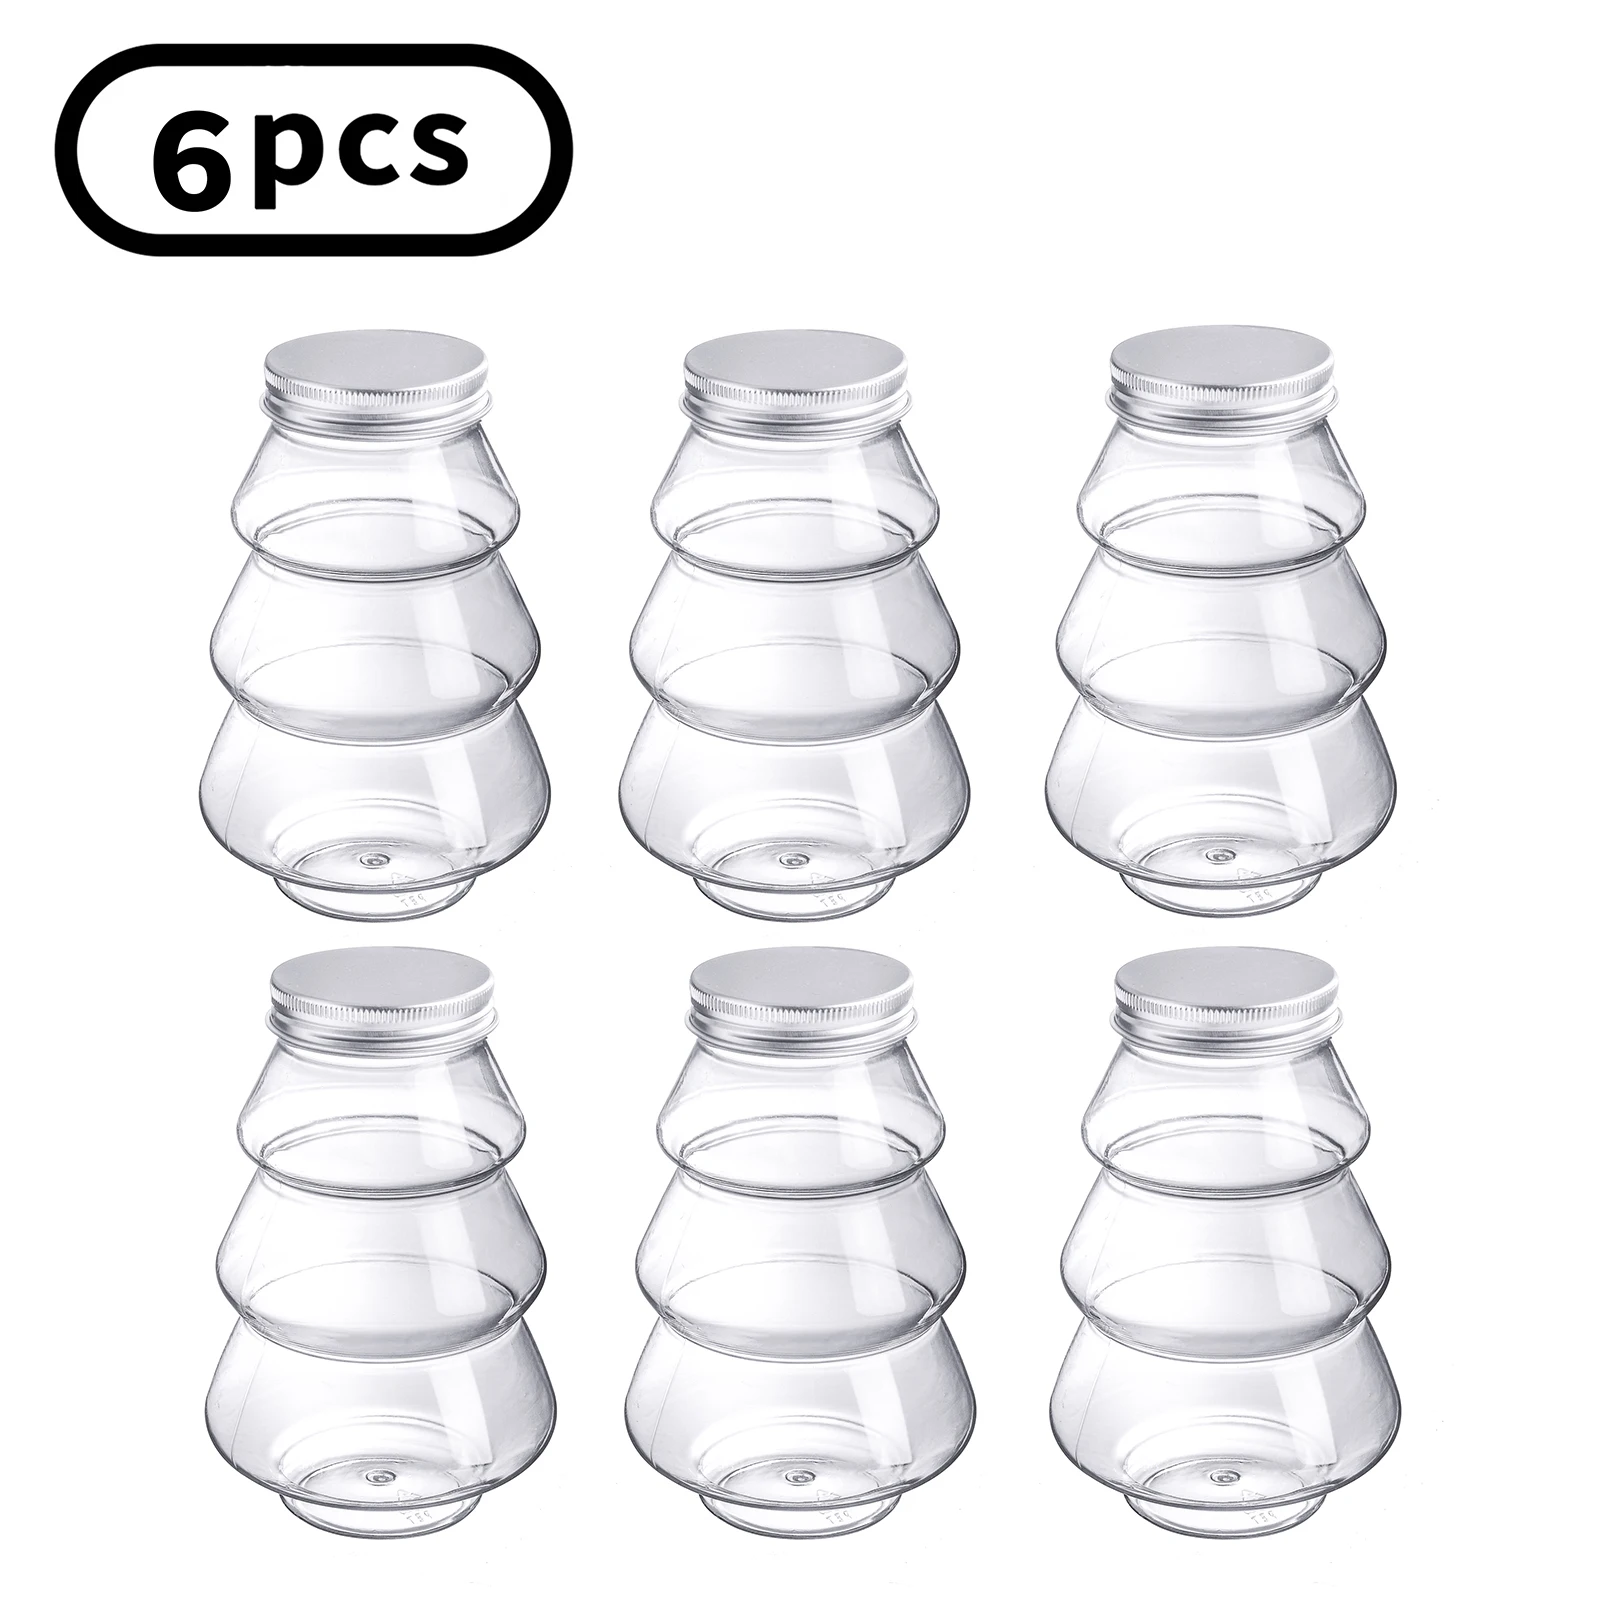 Поделки из пластиковых бутылок - презентация онлайн